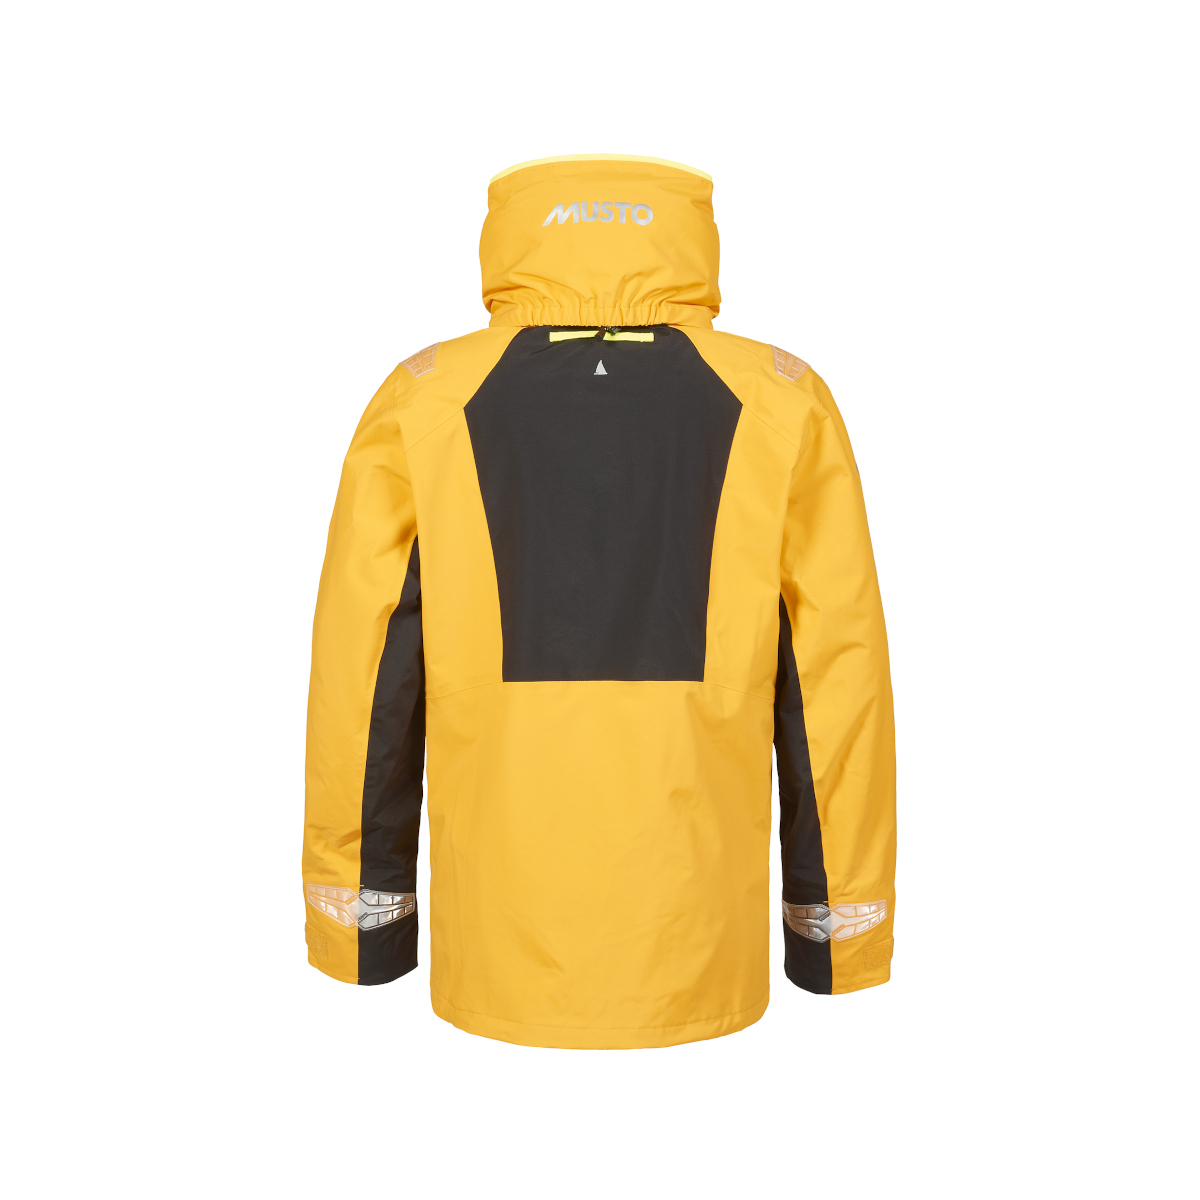 Musto BR2 veste de voile Offshore 2.0 homme jaune, taille S